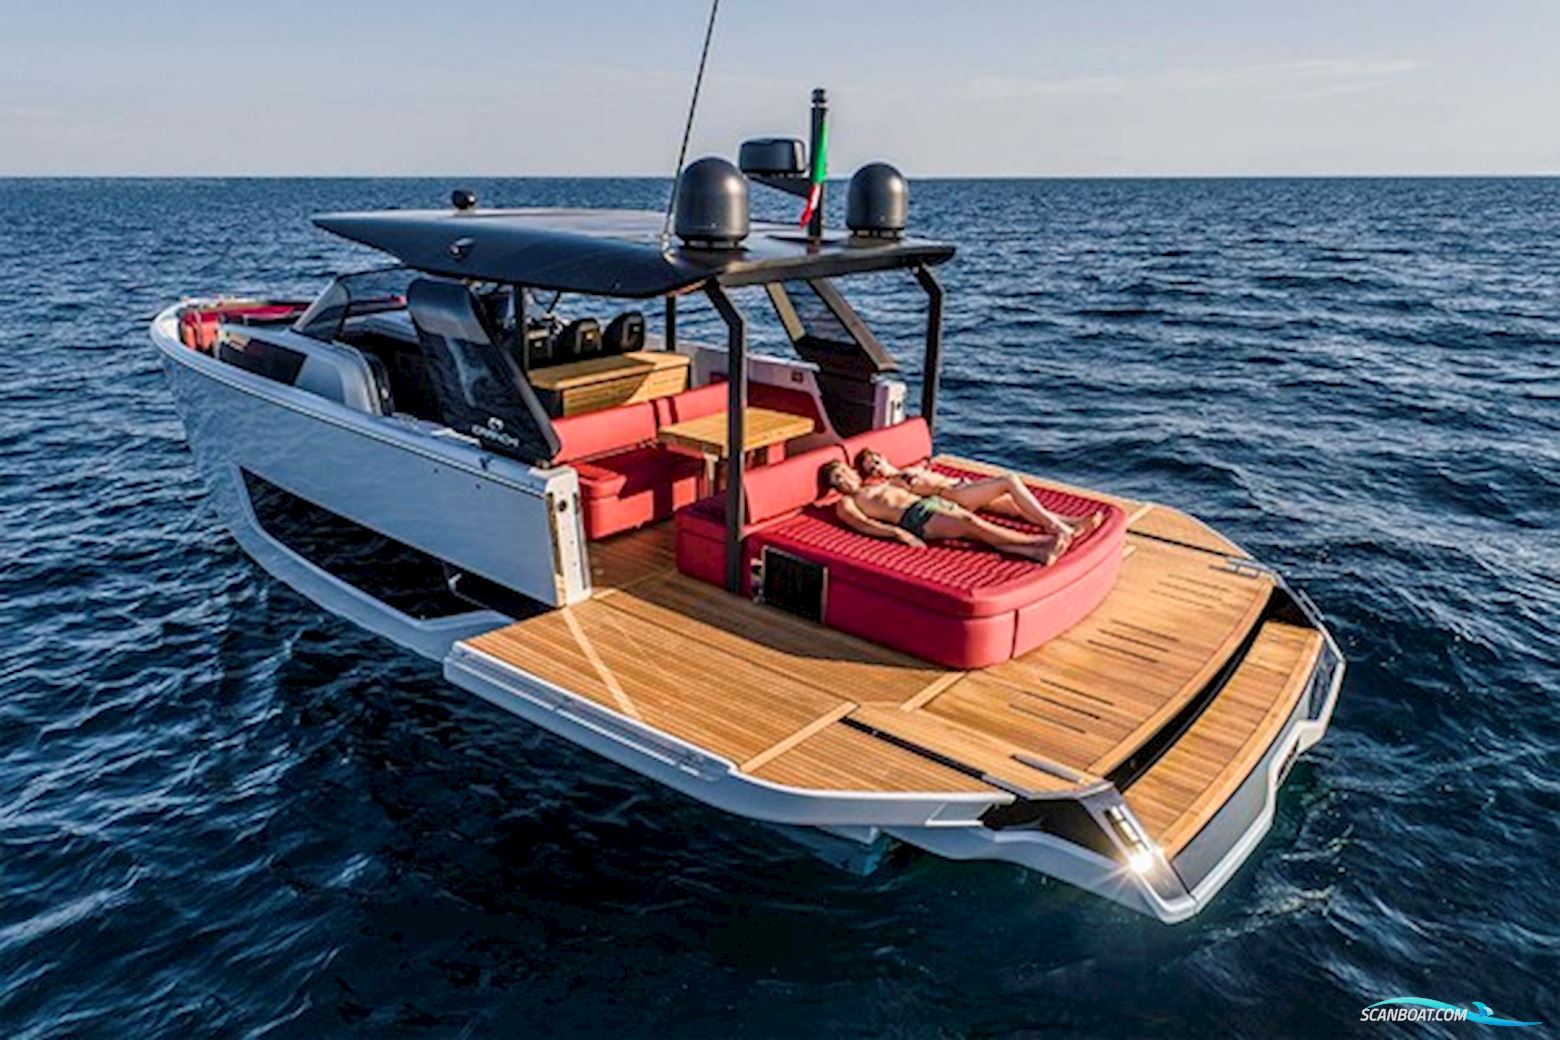 Cranchi A46 LT - Preorder Fra Motor boat 2021, with Volvo Penta Ips engine, Denmark